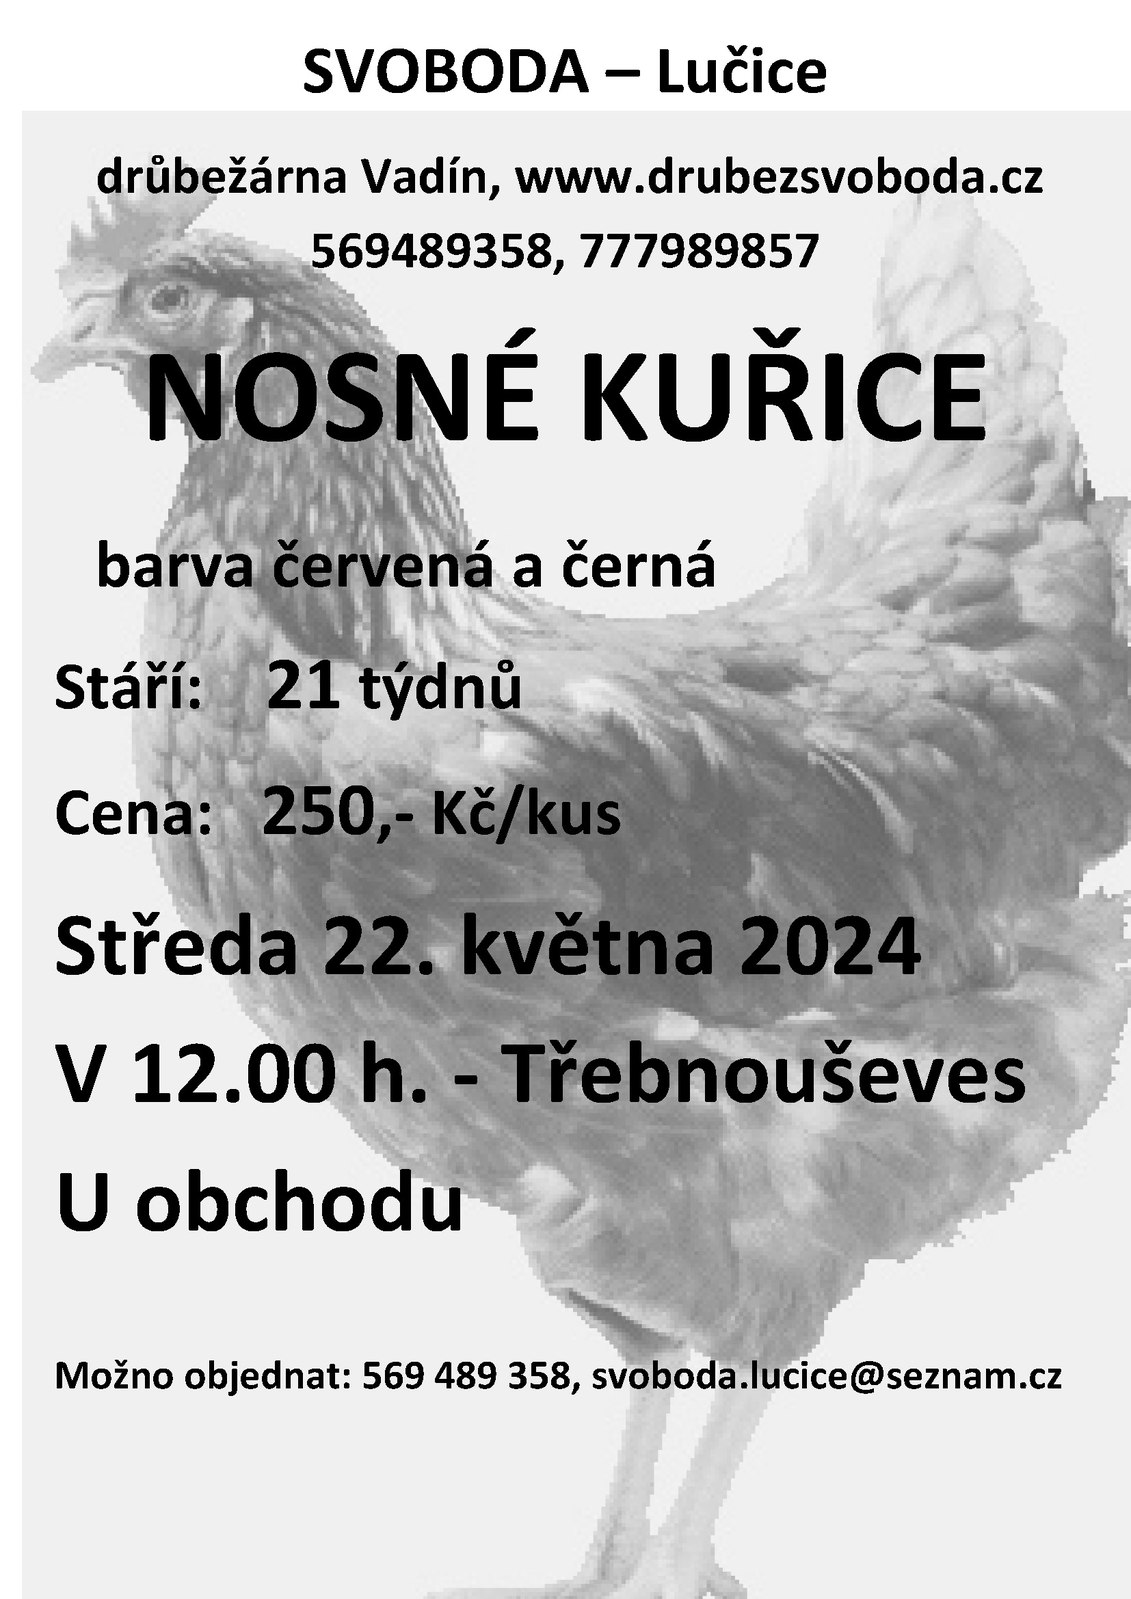 Drůbežárna Vadín - prodej nosných kuřic 22.5.2024.jpg